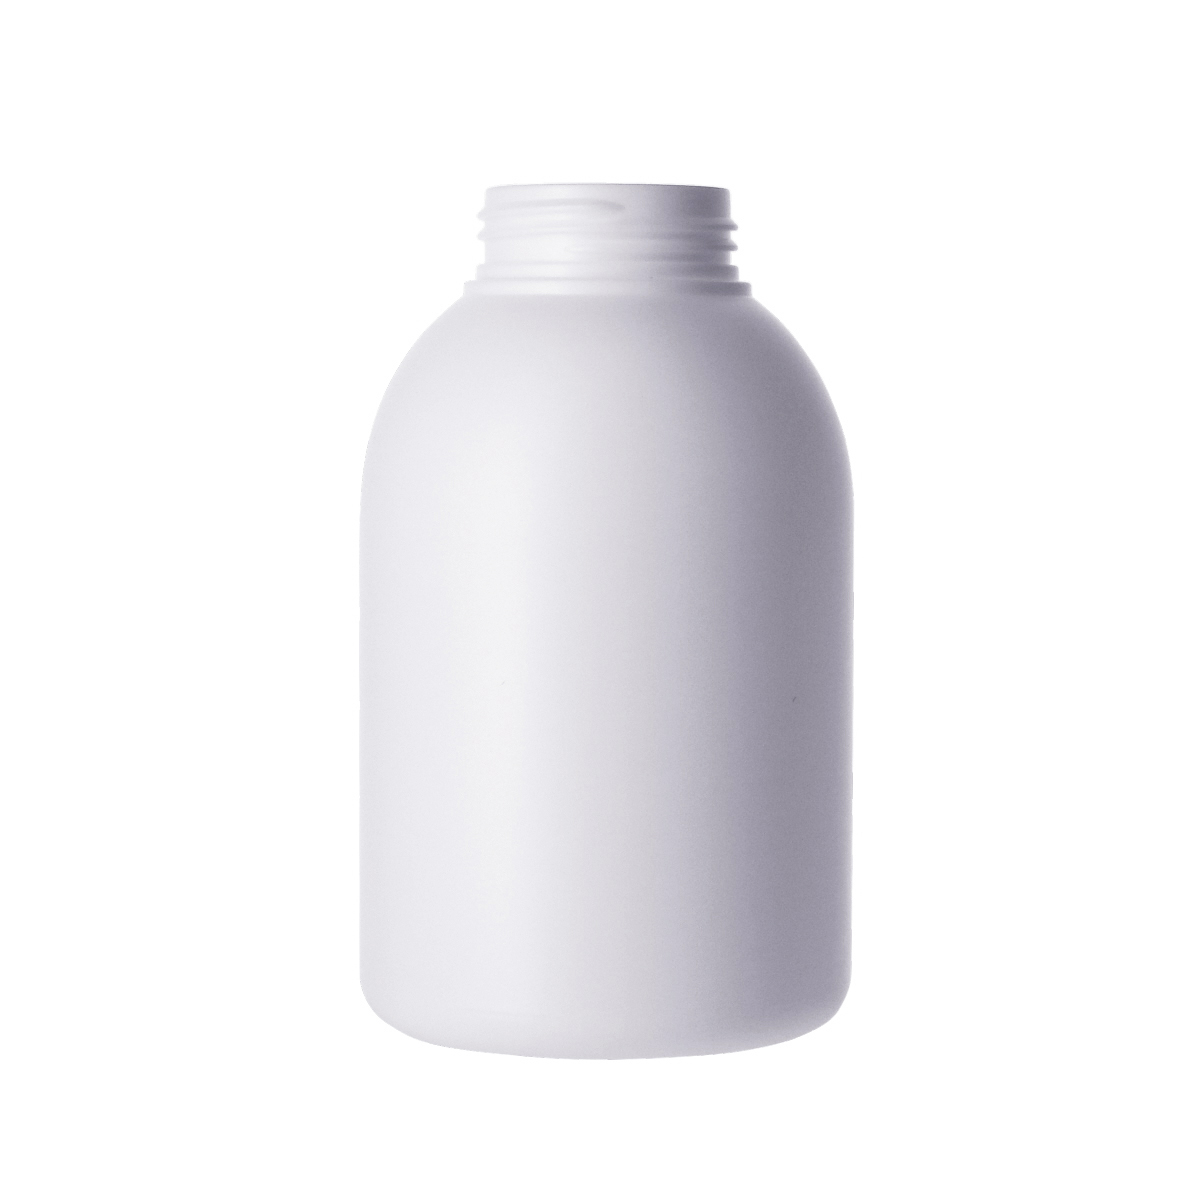 泡沫瓶,101-250ml,泡沫瓶,慕斯瓶,洗臉慕斯,卸妝慕斯,頭髮造型品,洗手慕斯